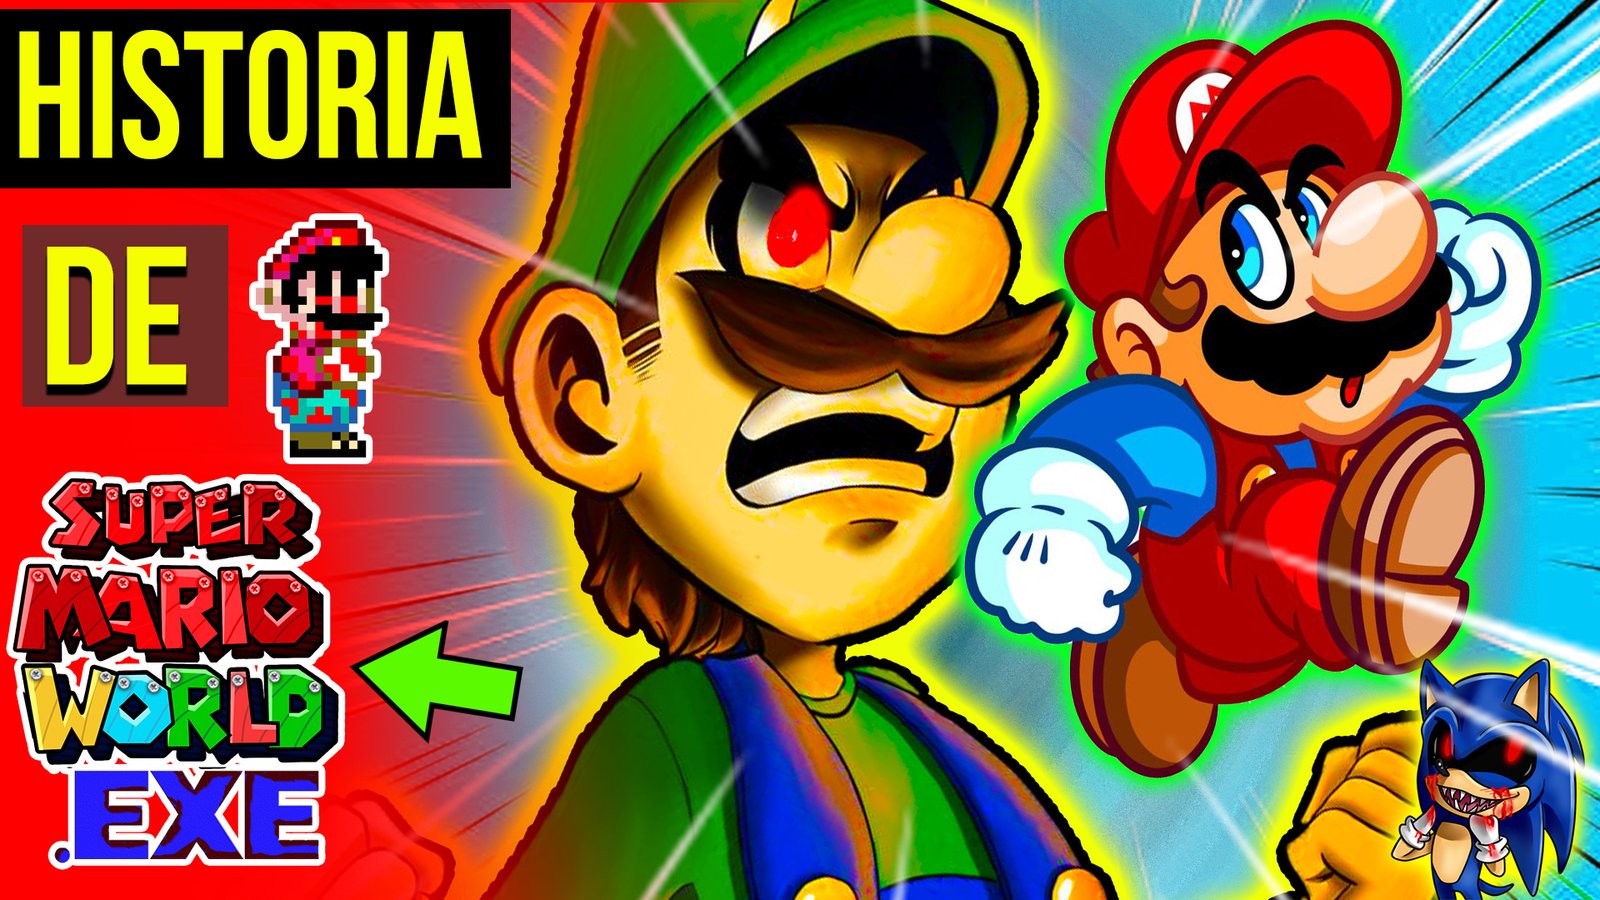 Super Mario World exe